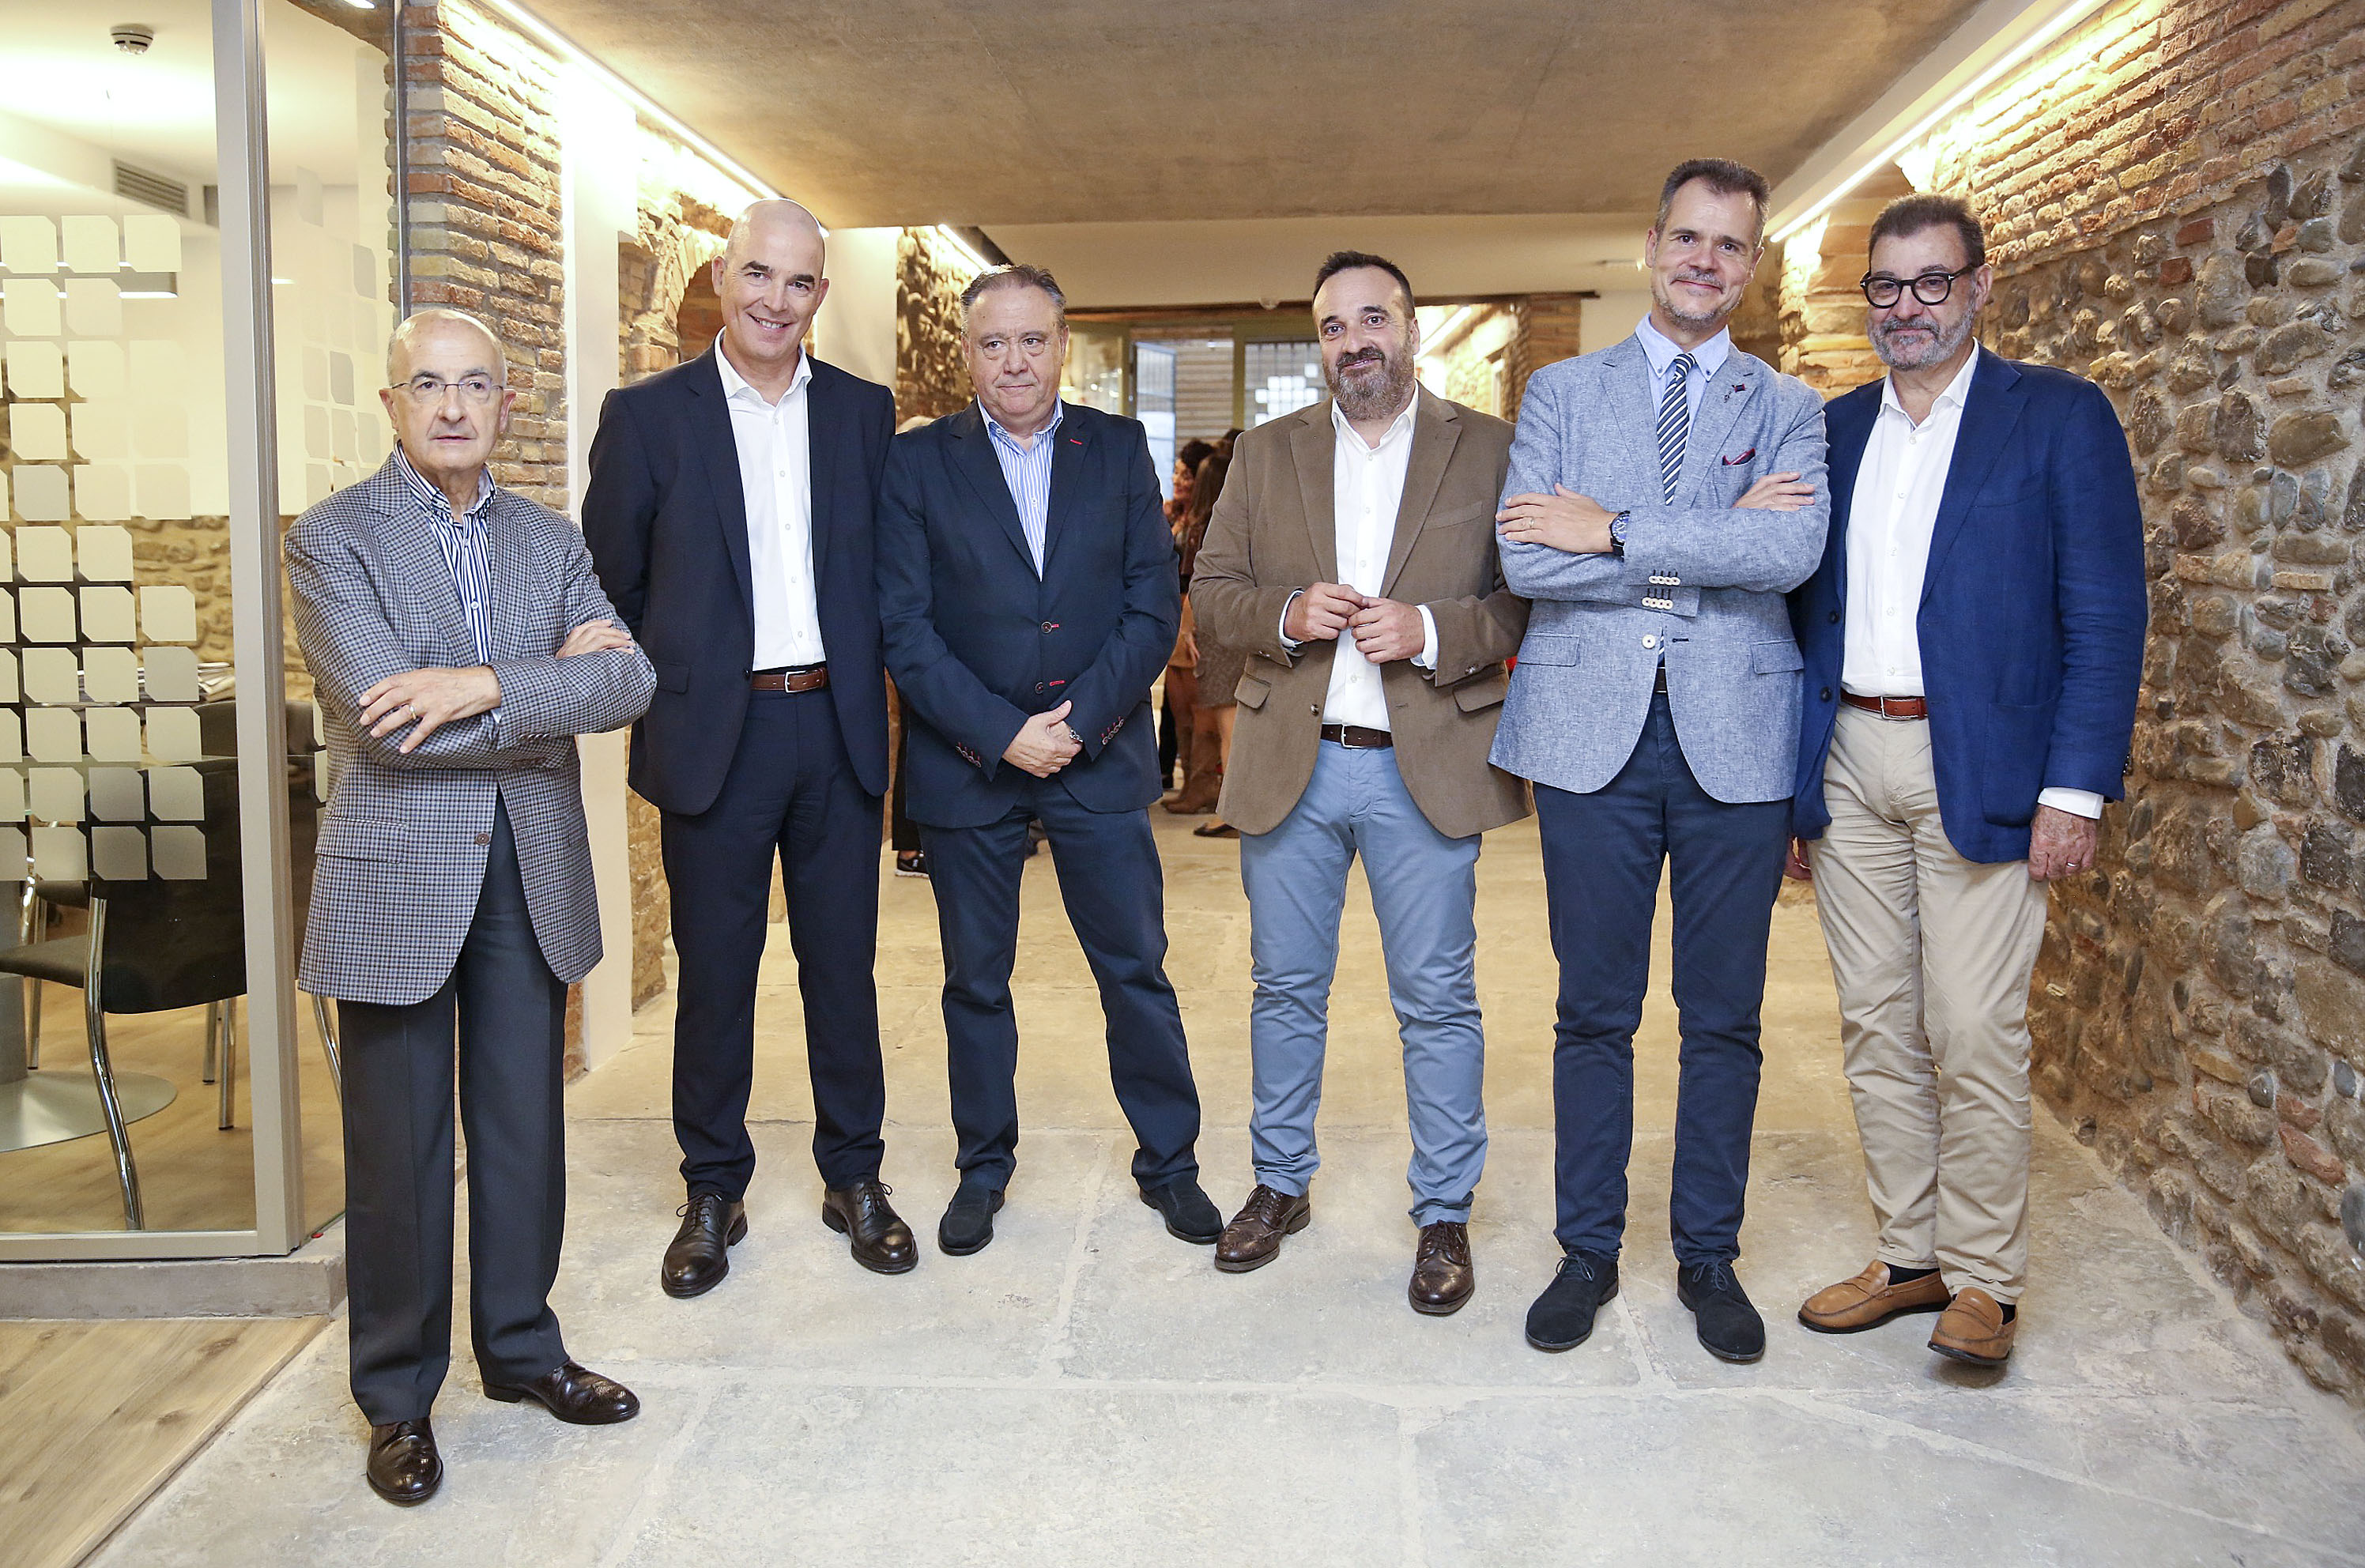 D’esquerra a dreta, Lluis Lloret, fundador de Comput, Jordi Prada i Josep Bernat (Comput), Eduard Molas i David Oliva (Just Consulting) i Josep Saurina (Comput) a les noves instal·lacions de la Casa Ricart